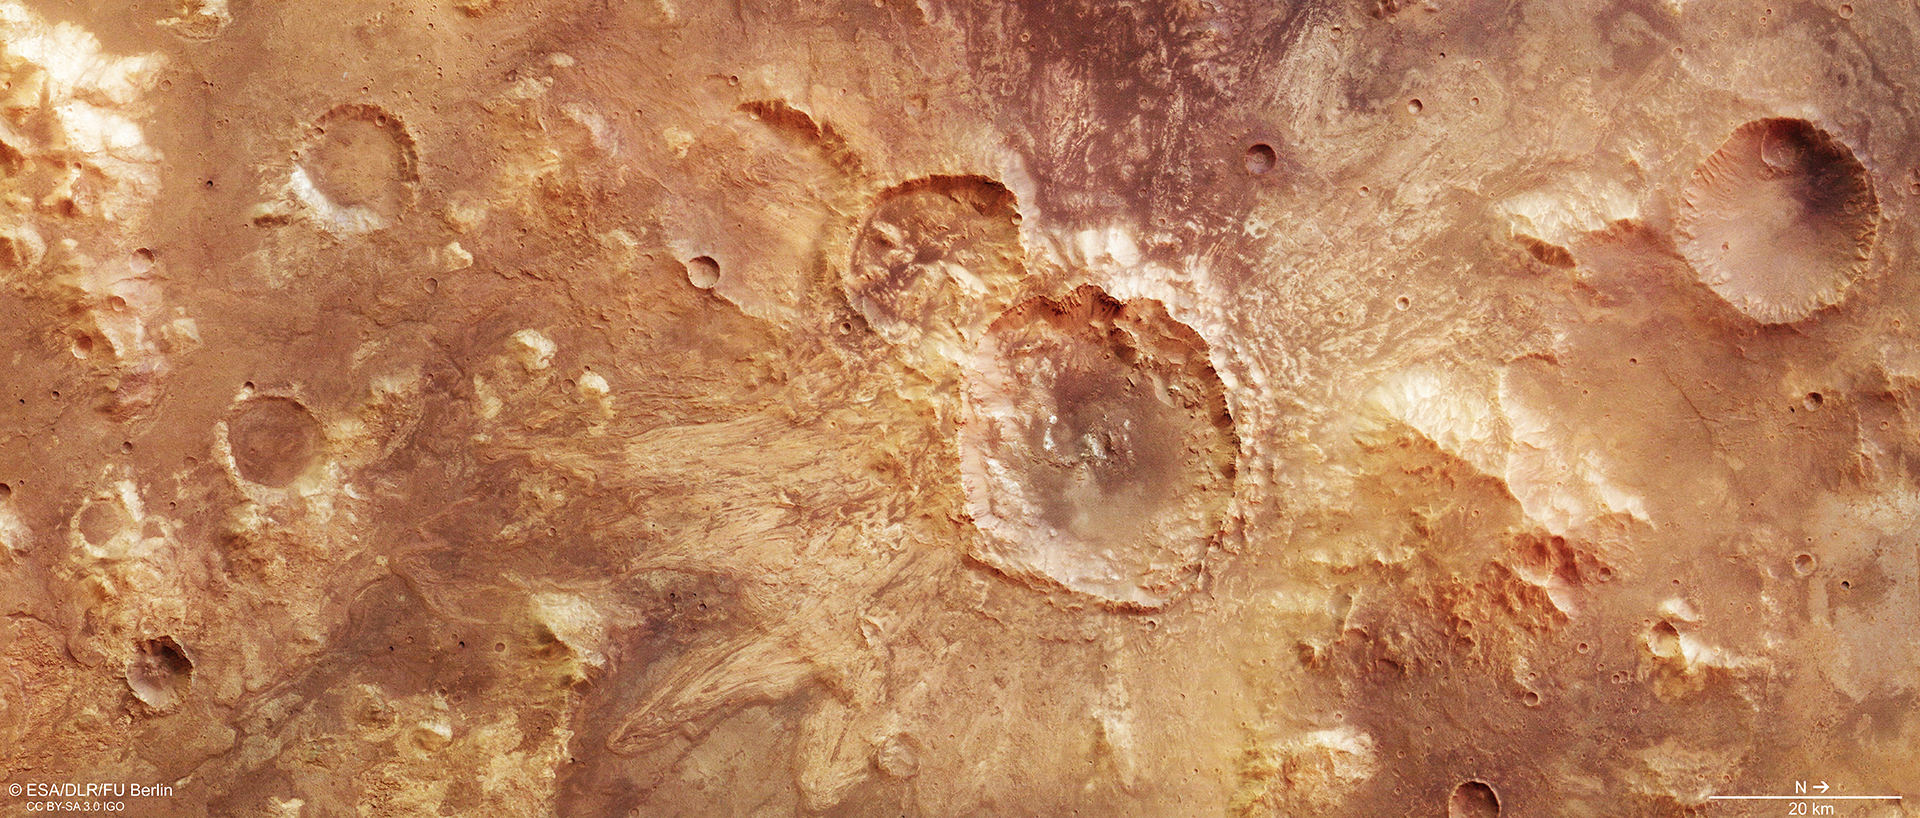 Imágenes de cráter en Marte, revela posible existencia de líquido (ESA)